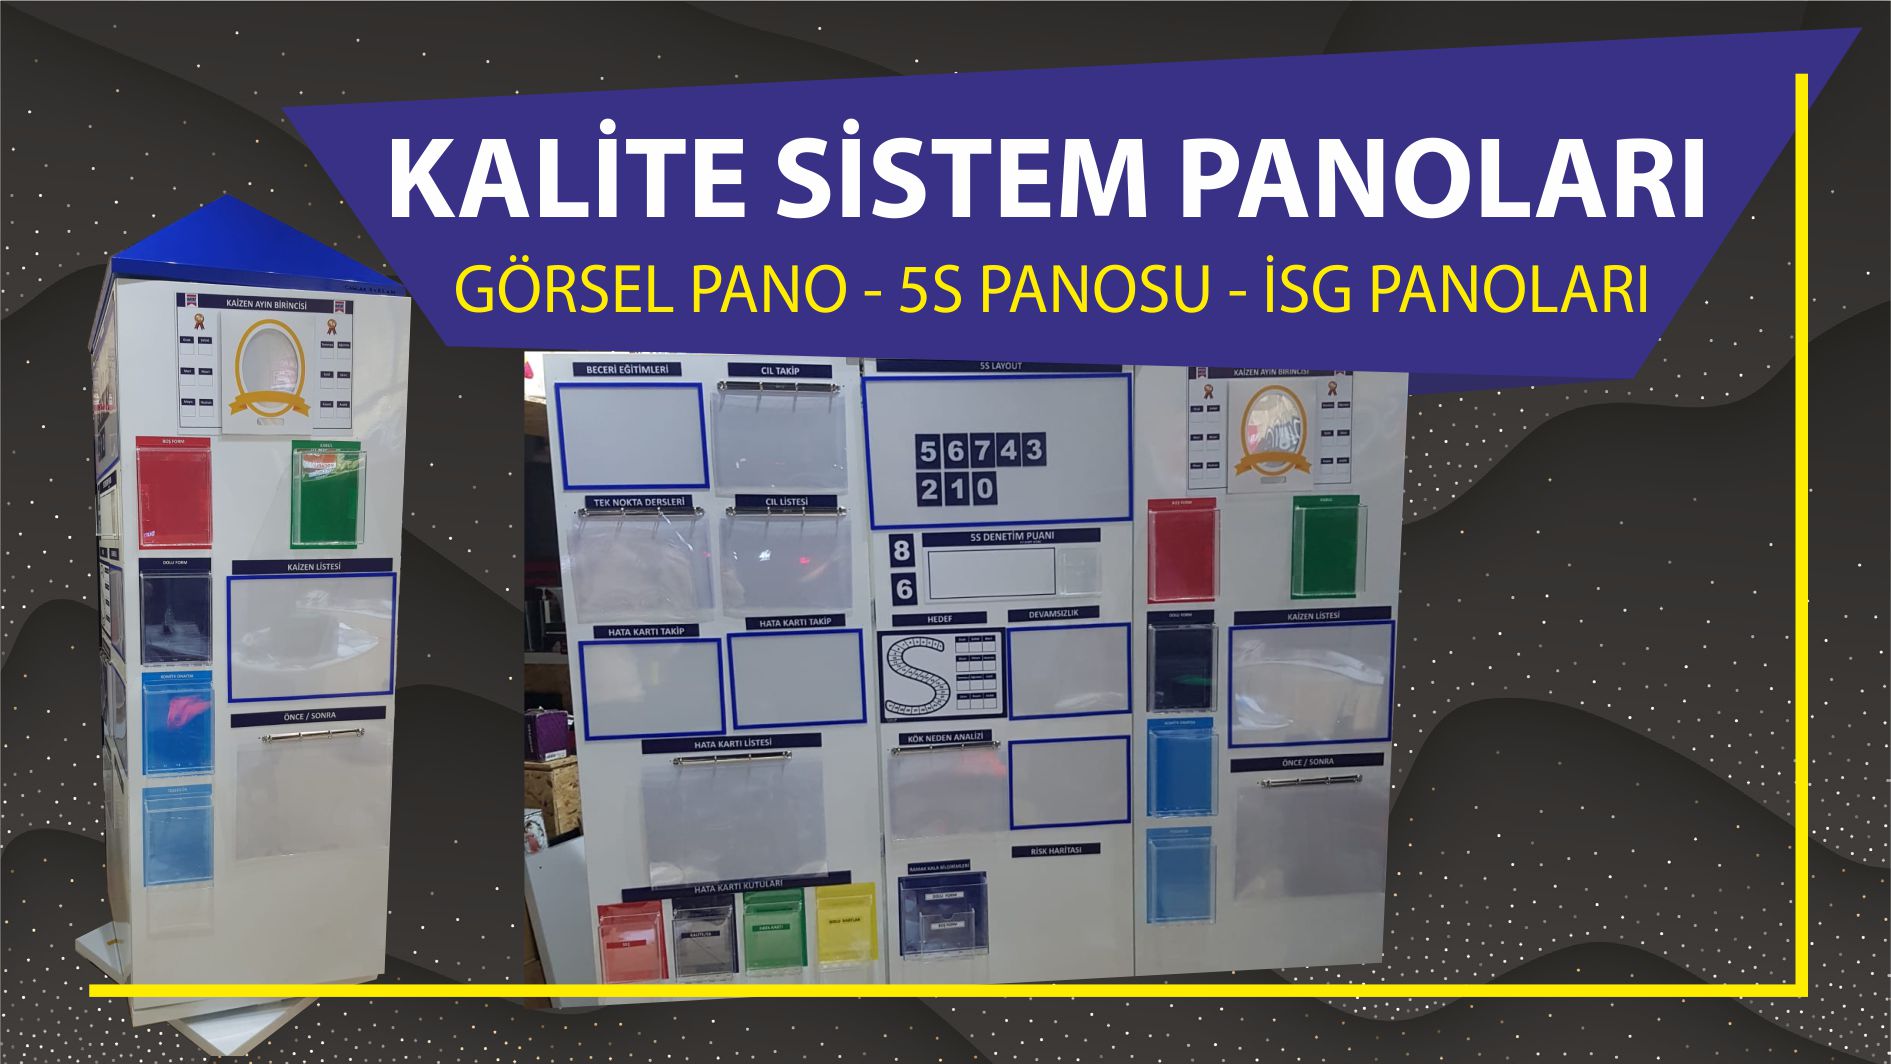 kalite sistem panoları GÖRSEL PANO - 5S PANOSU - İSG PANOLARI görsel fabrika